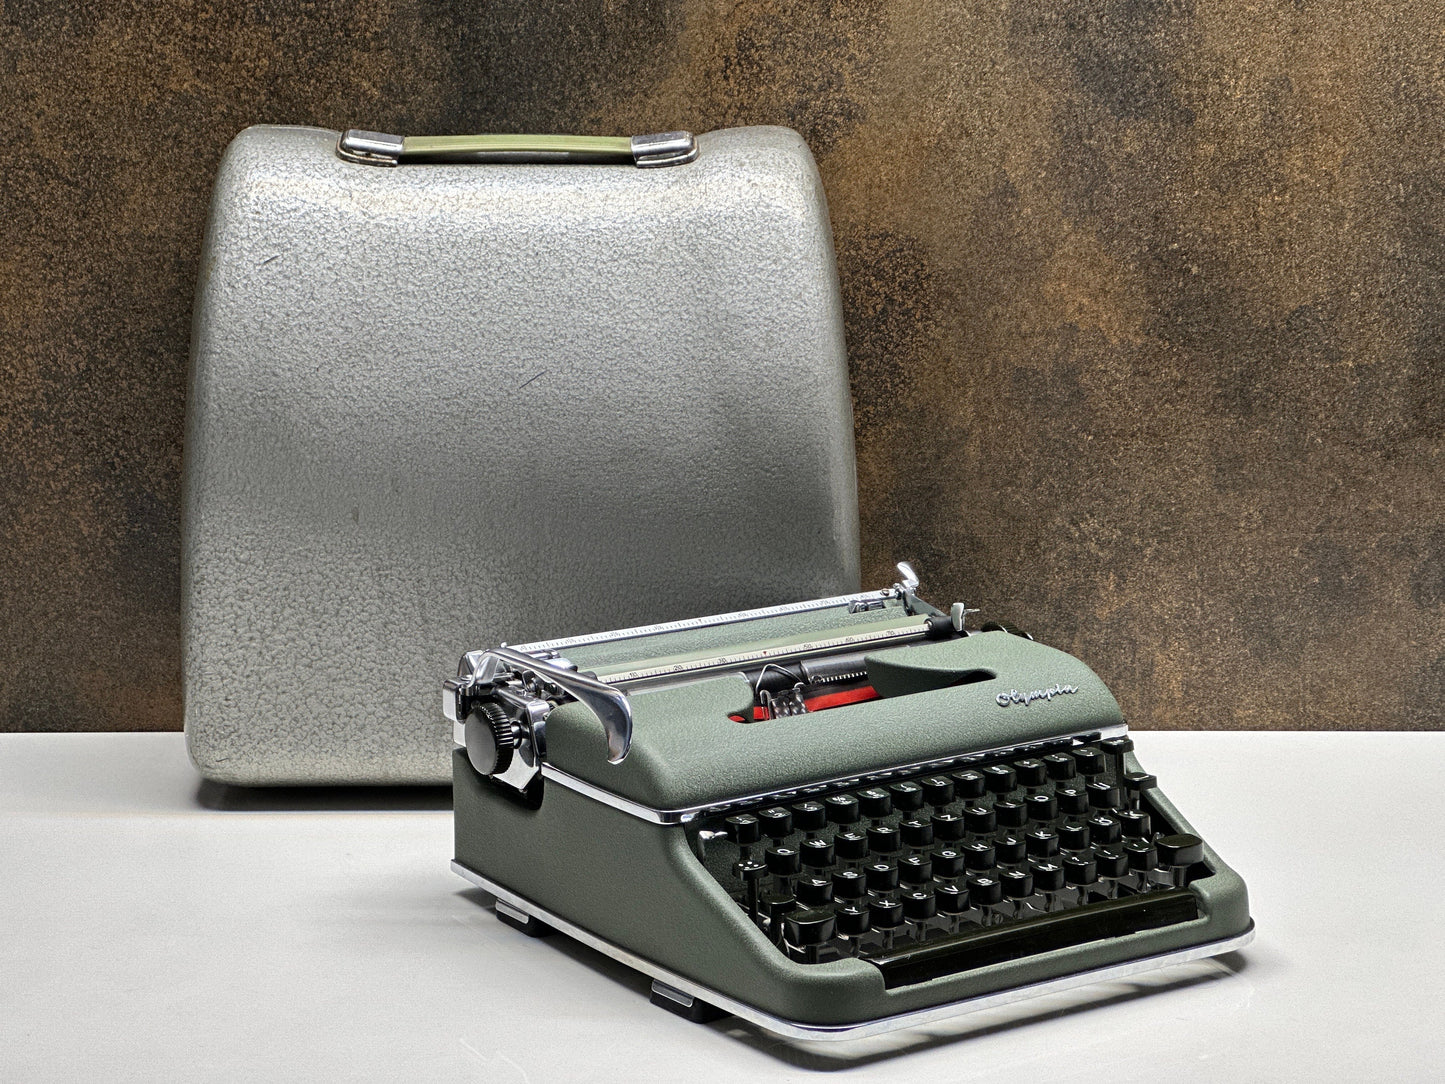 Olympia SM3 Typewriter / Full Orginal - Premium Gift / Typewriter World | Typewriter like new| Typewriter Working Serviced